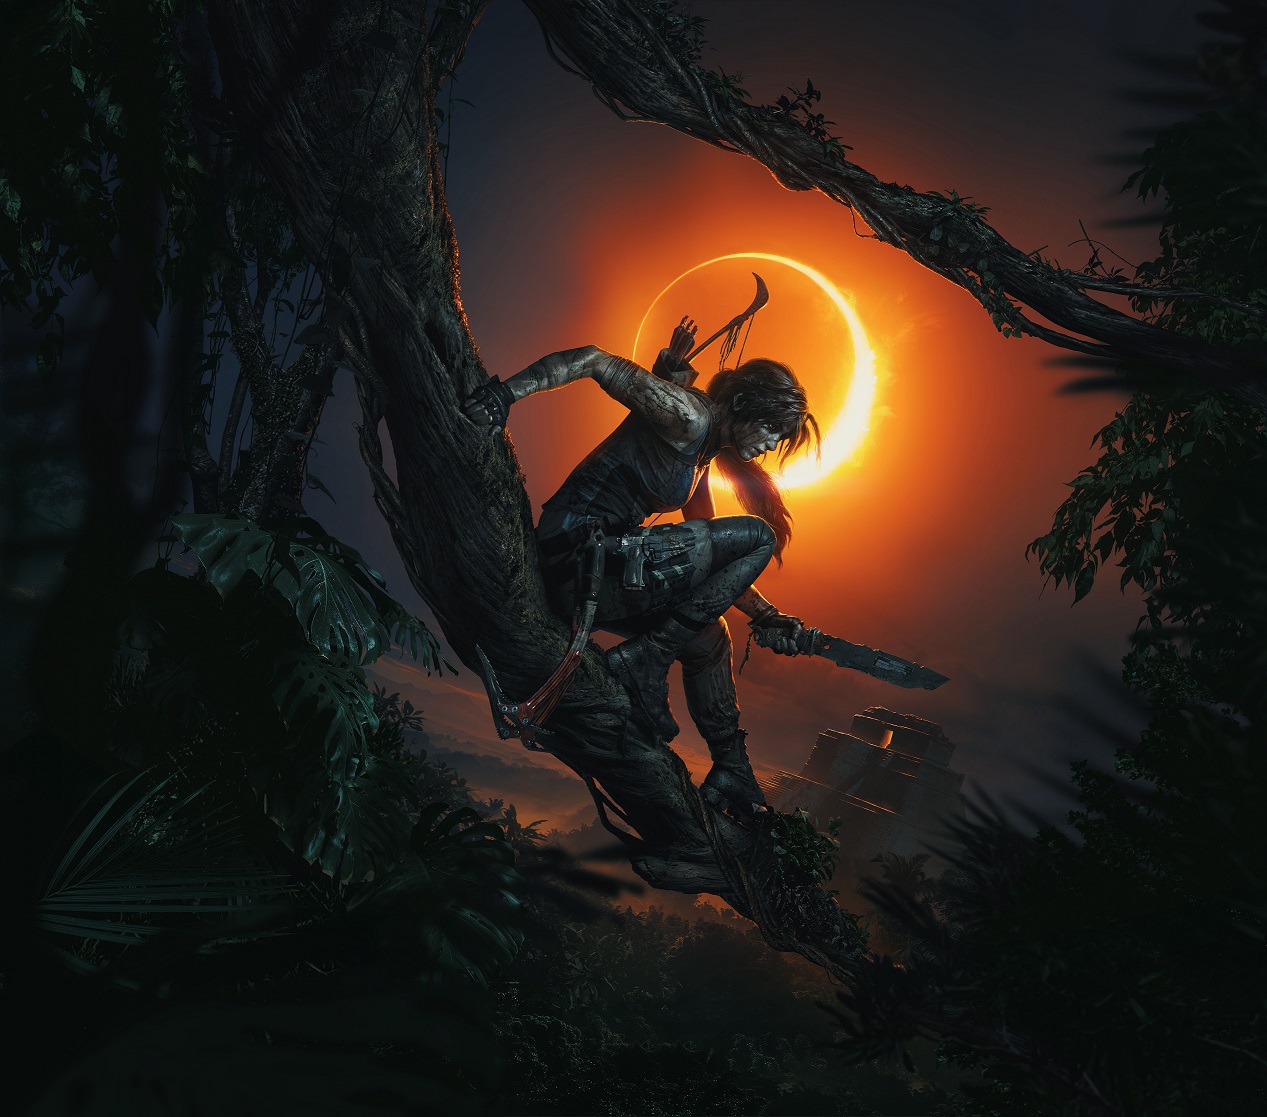 Shadow of the Tomb Raider estrena demo gratuita en PS4, Xbox One y PC